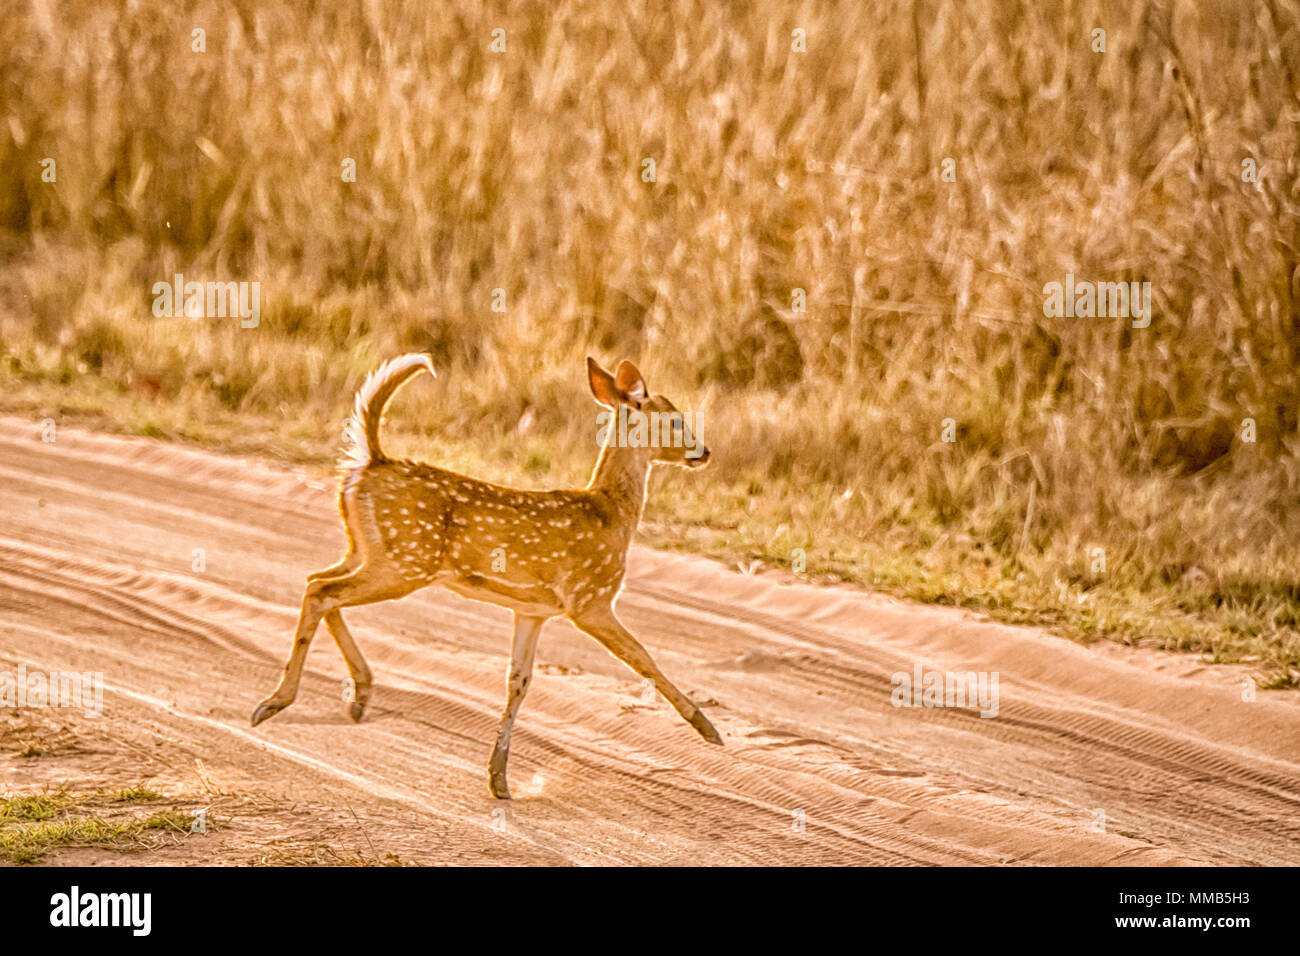 Les jeunes cerfs tachetés ou Chital sauvage fawn, Axis axis, courir, sauter, dans Bandhavgarh National Park, Madhya Pradesh, Inde Banque D'Images